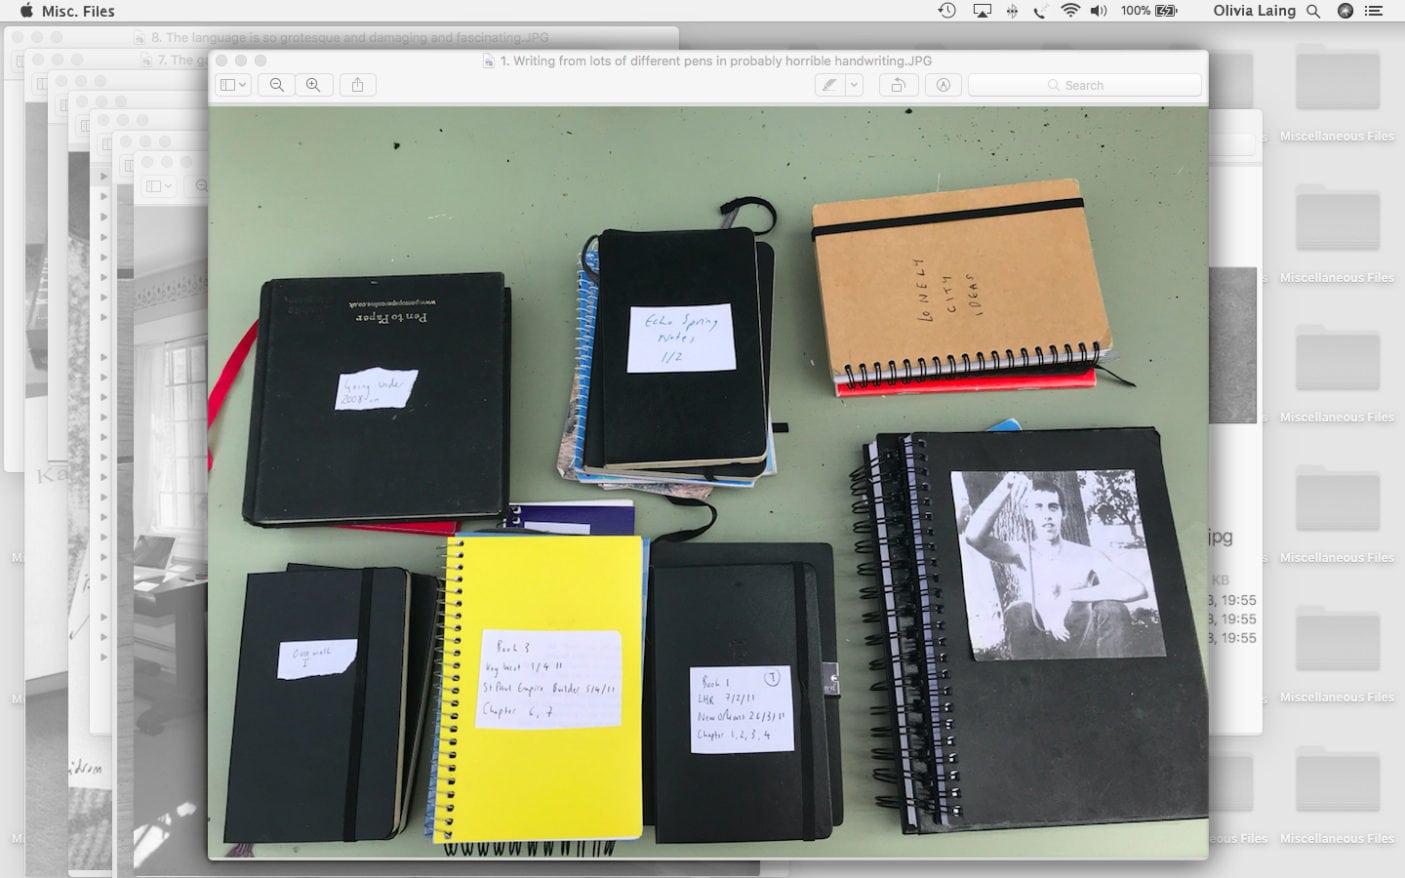 Olivia Laing notebooks